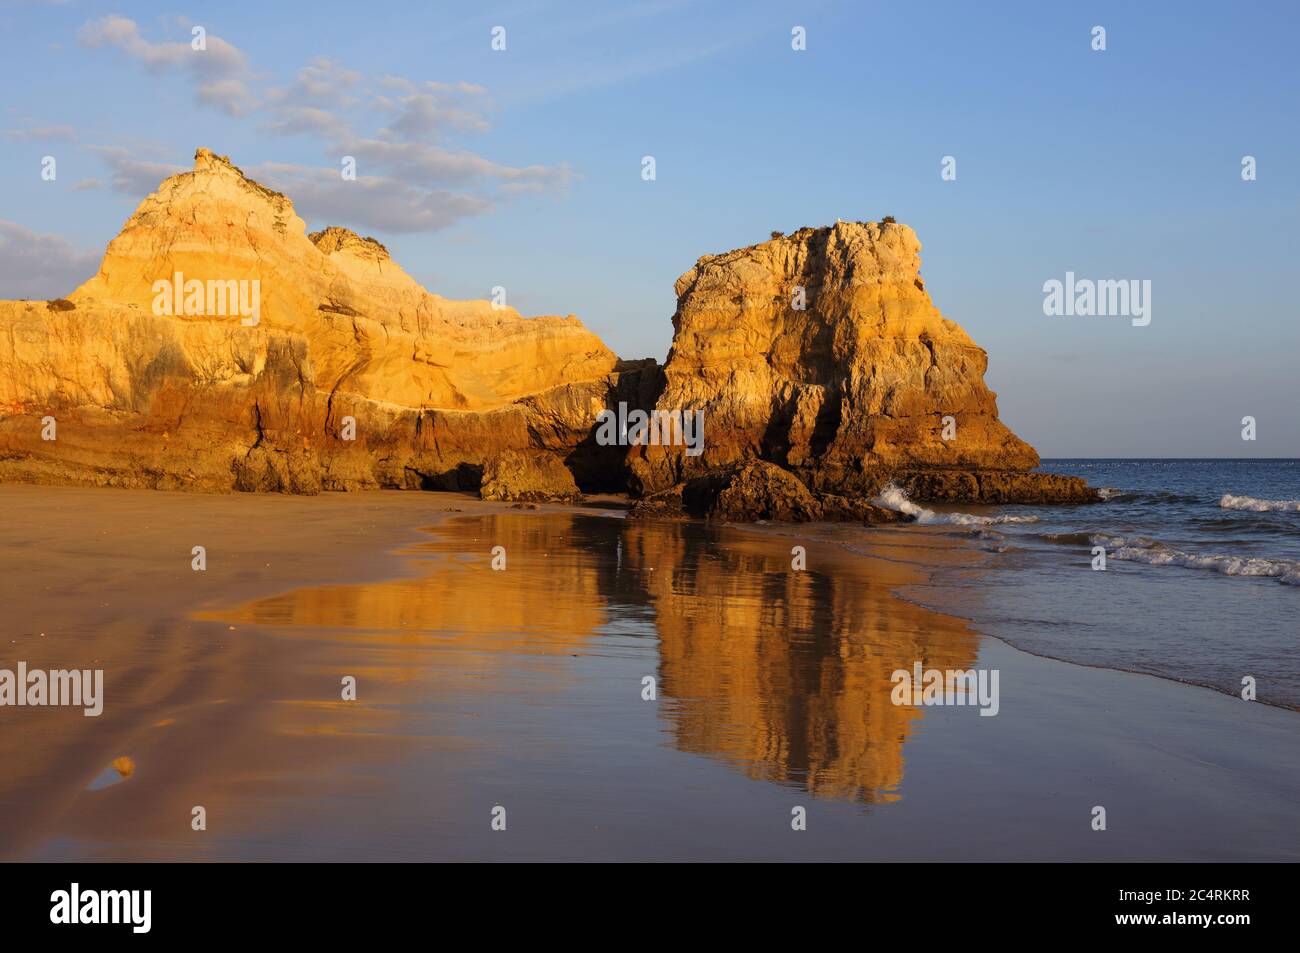 Portugal, Portimao, Praia do Vau. Coucher de soleil, baignade, formations rocheuses les faisant réfléchir sur la plage vierge et déserte - Praia dos Careanos. Banque D'Images